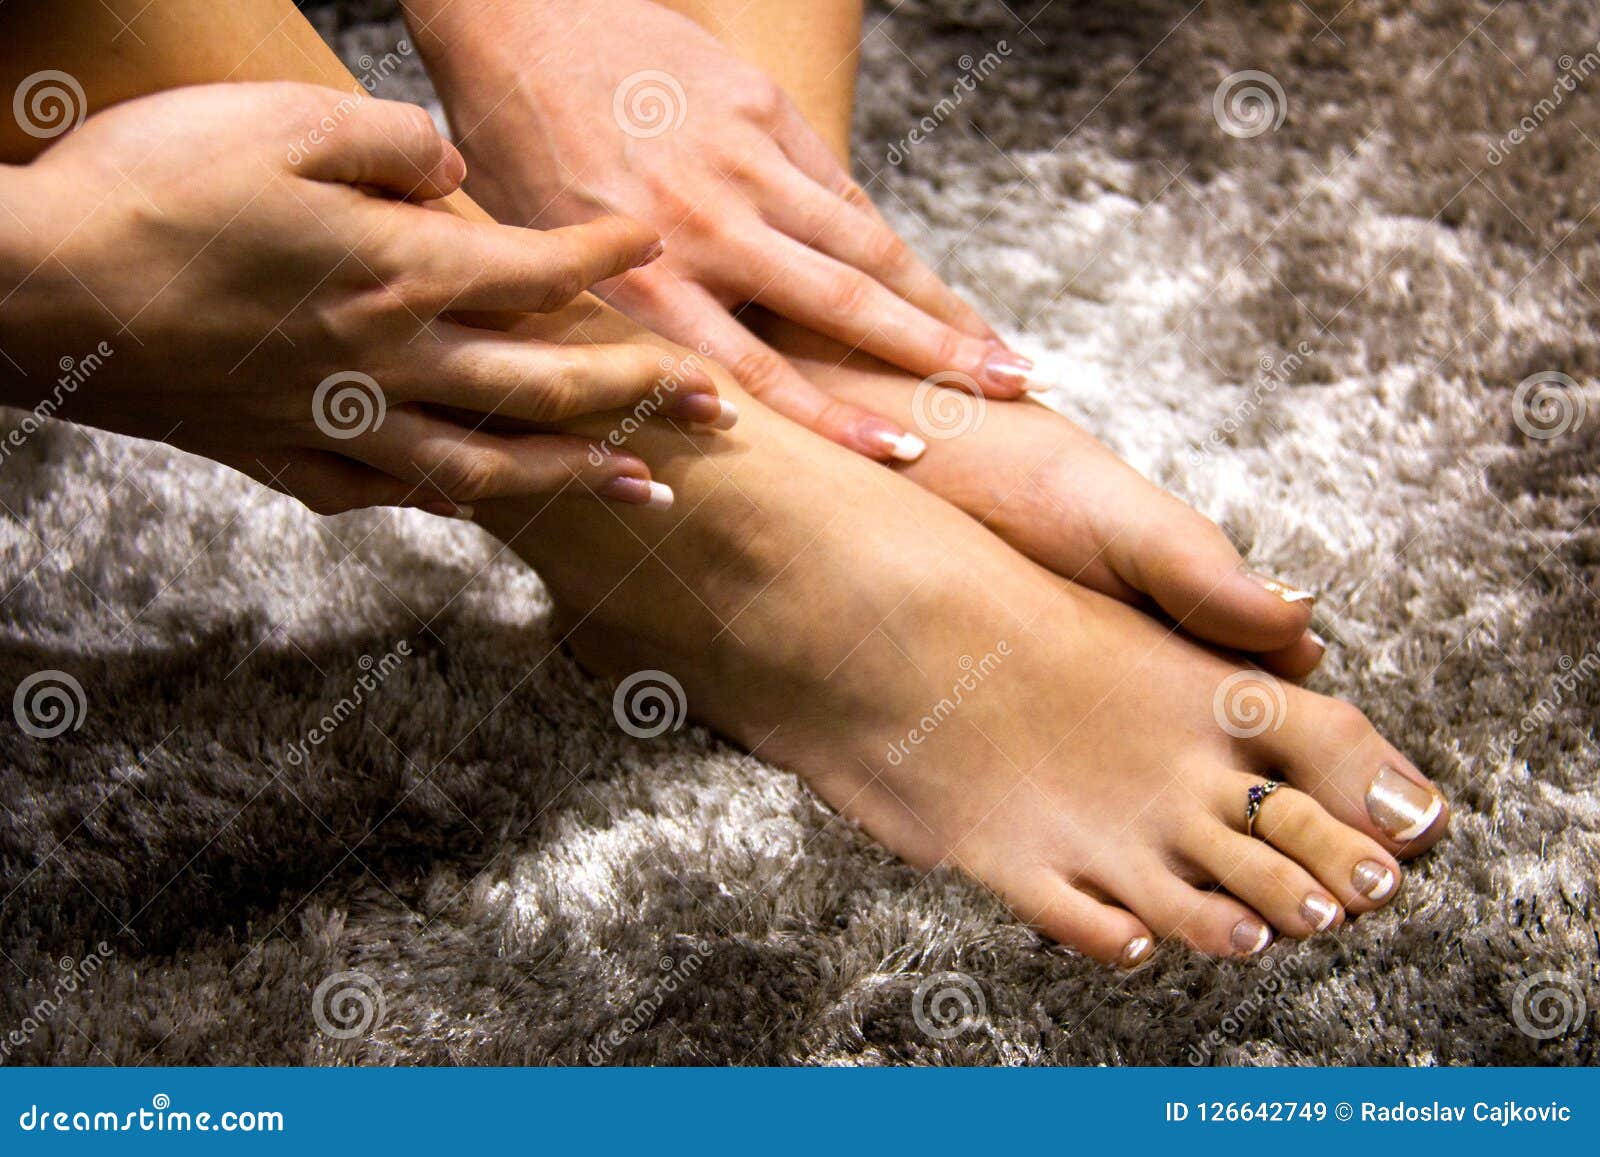 2,411 Beauty Nails Hand Feet Stock Photos - Free & Royalty-Free